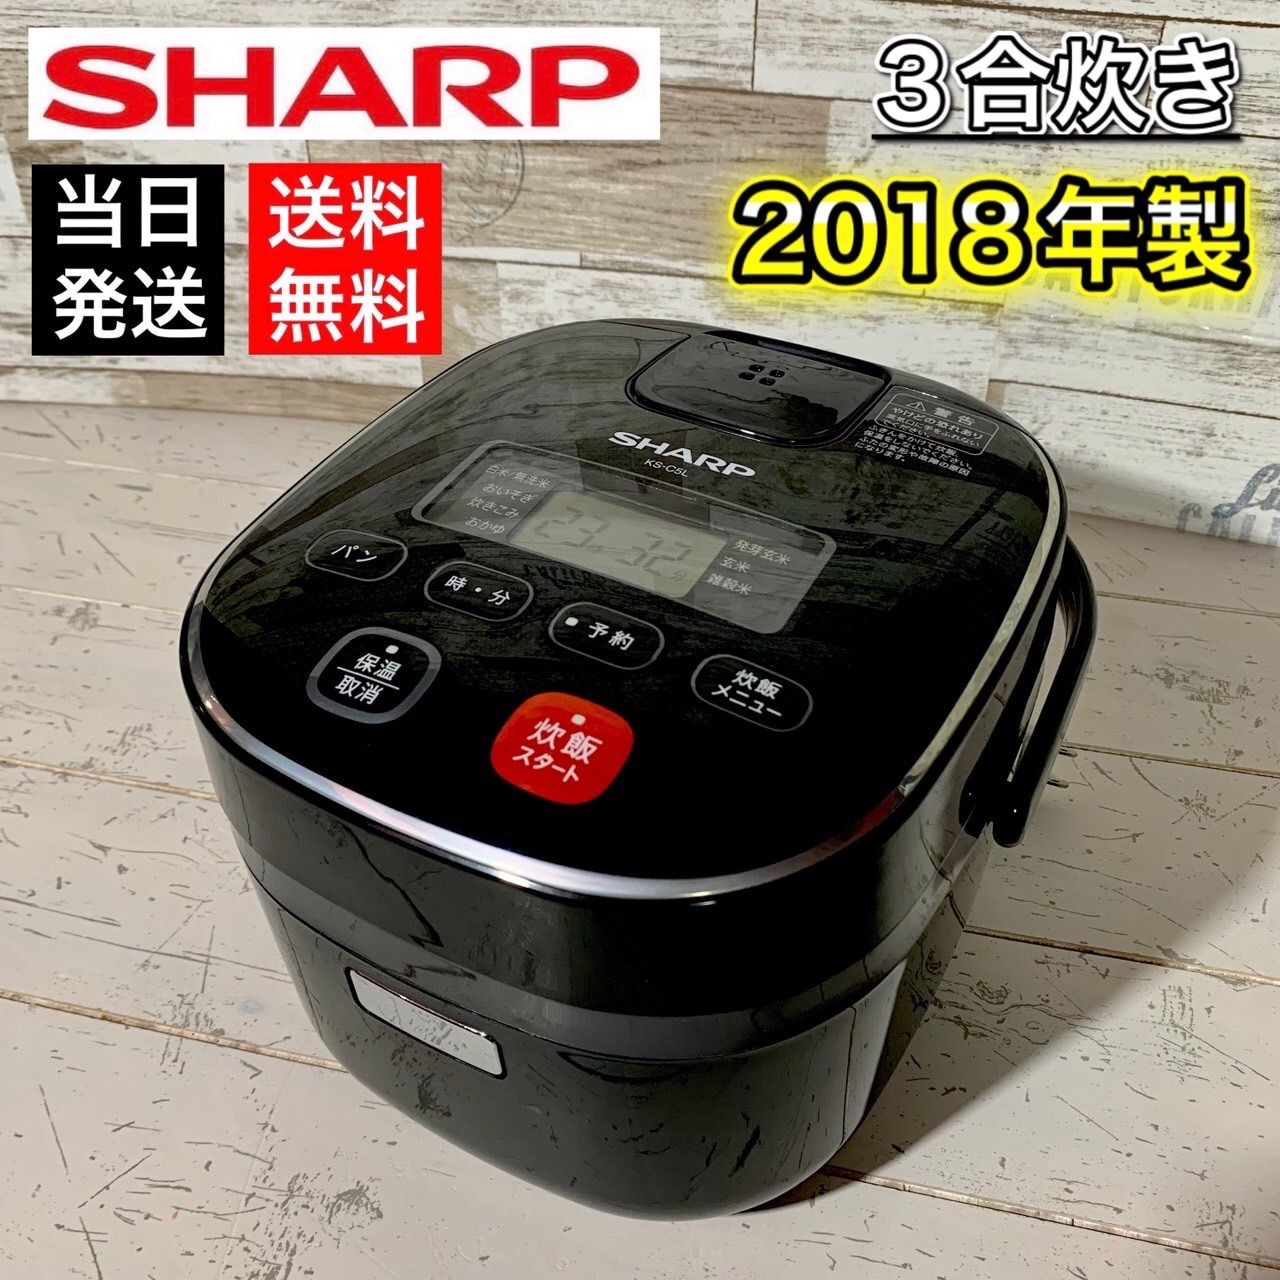 当日発送‼️】SHARP ジャー炊飯器 2018年製✨ - ドルの家電屋さん